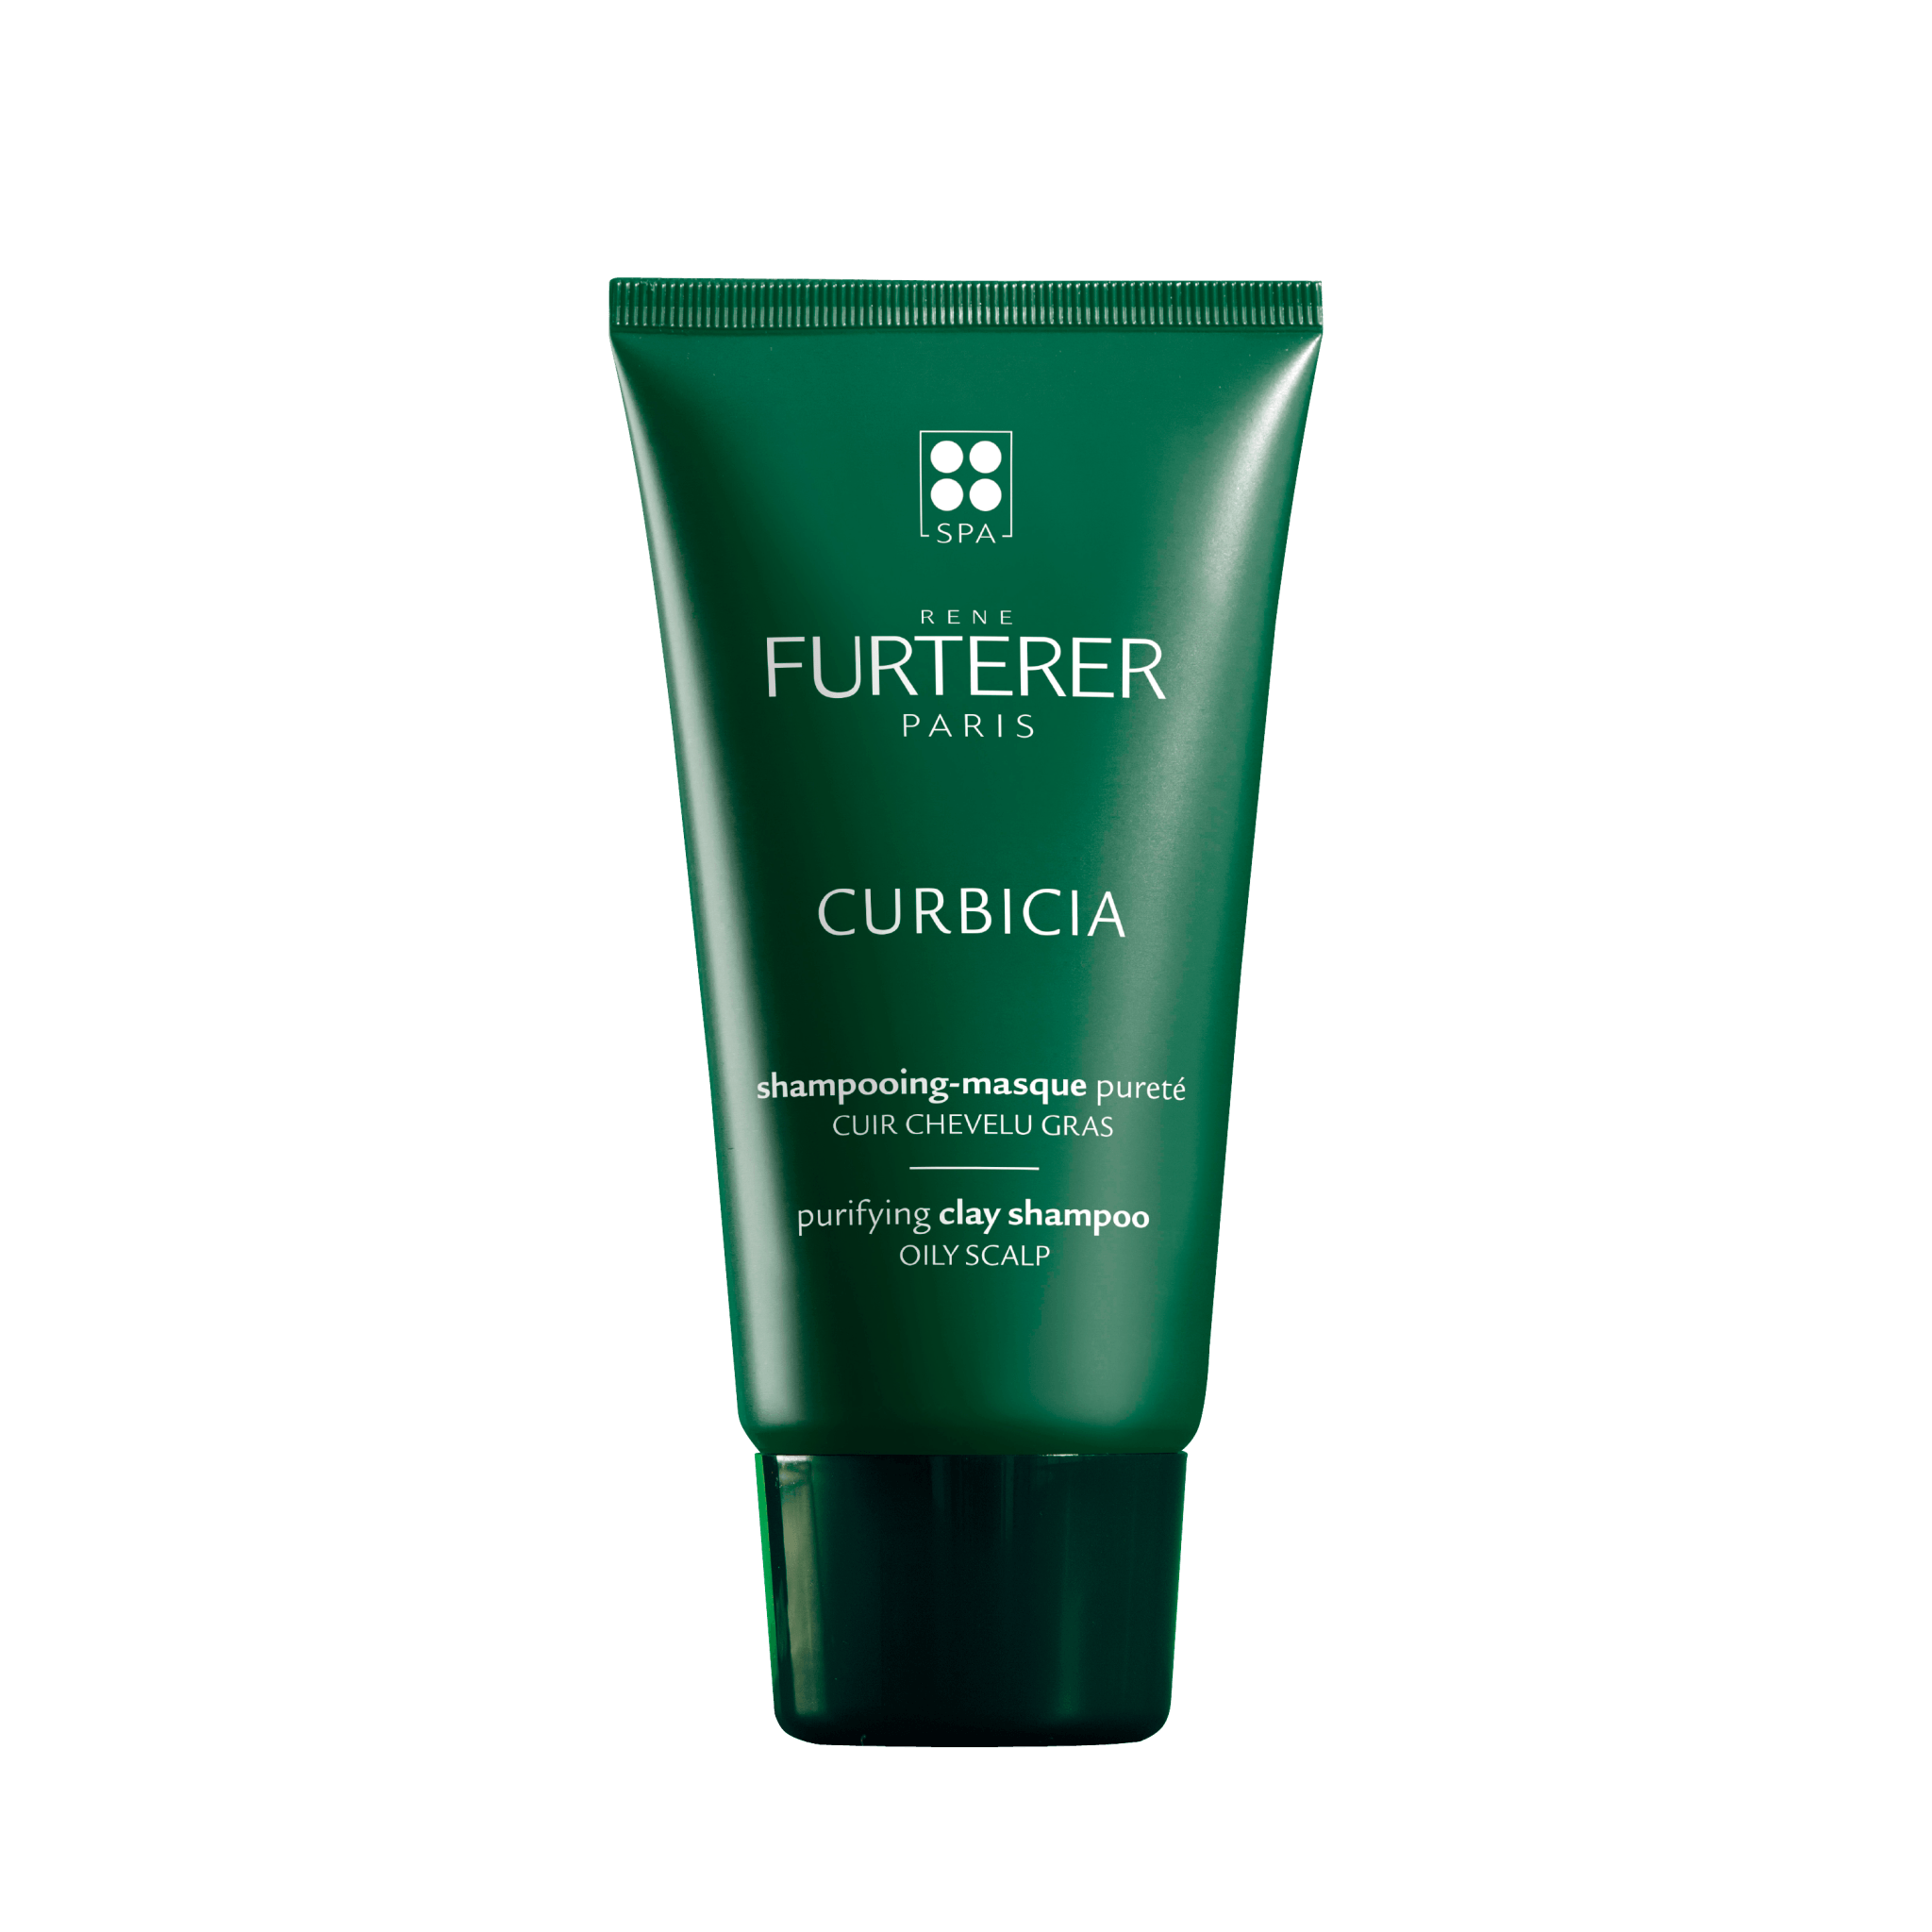 CURBICIA shampoing-masque pureté à l'argile absorbante 100ml- René Furterer - 53 Karat